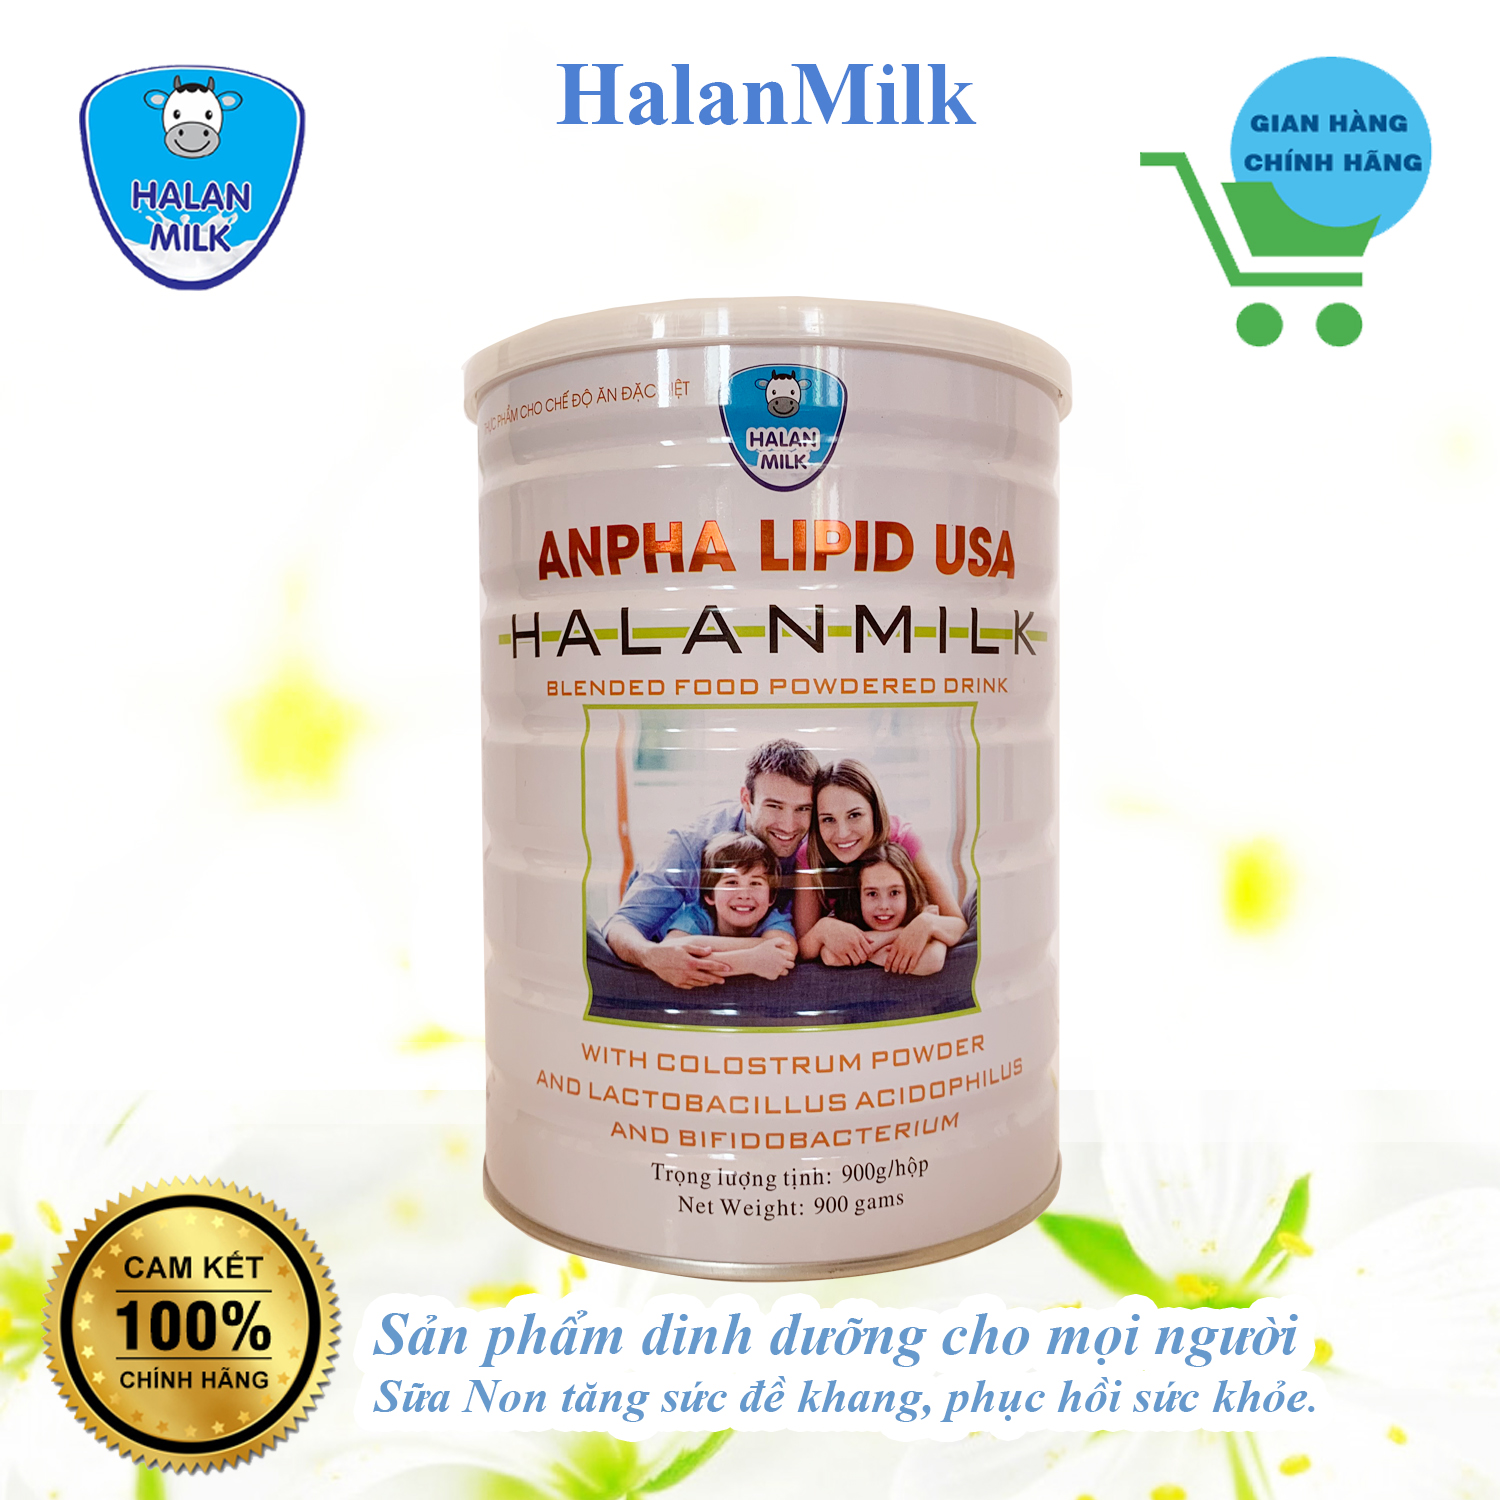 Sữa Anpha lipid USA - Halan Milk - Sữa Non tăng sức đề kháng, phục hồi sức khỏe